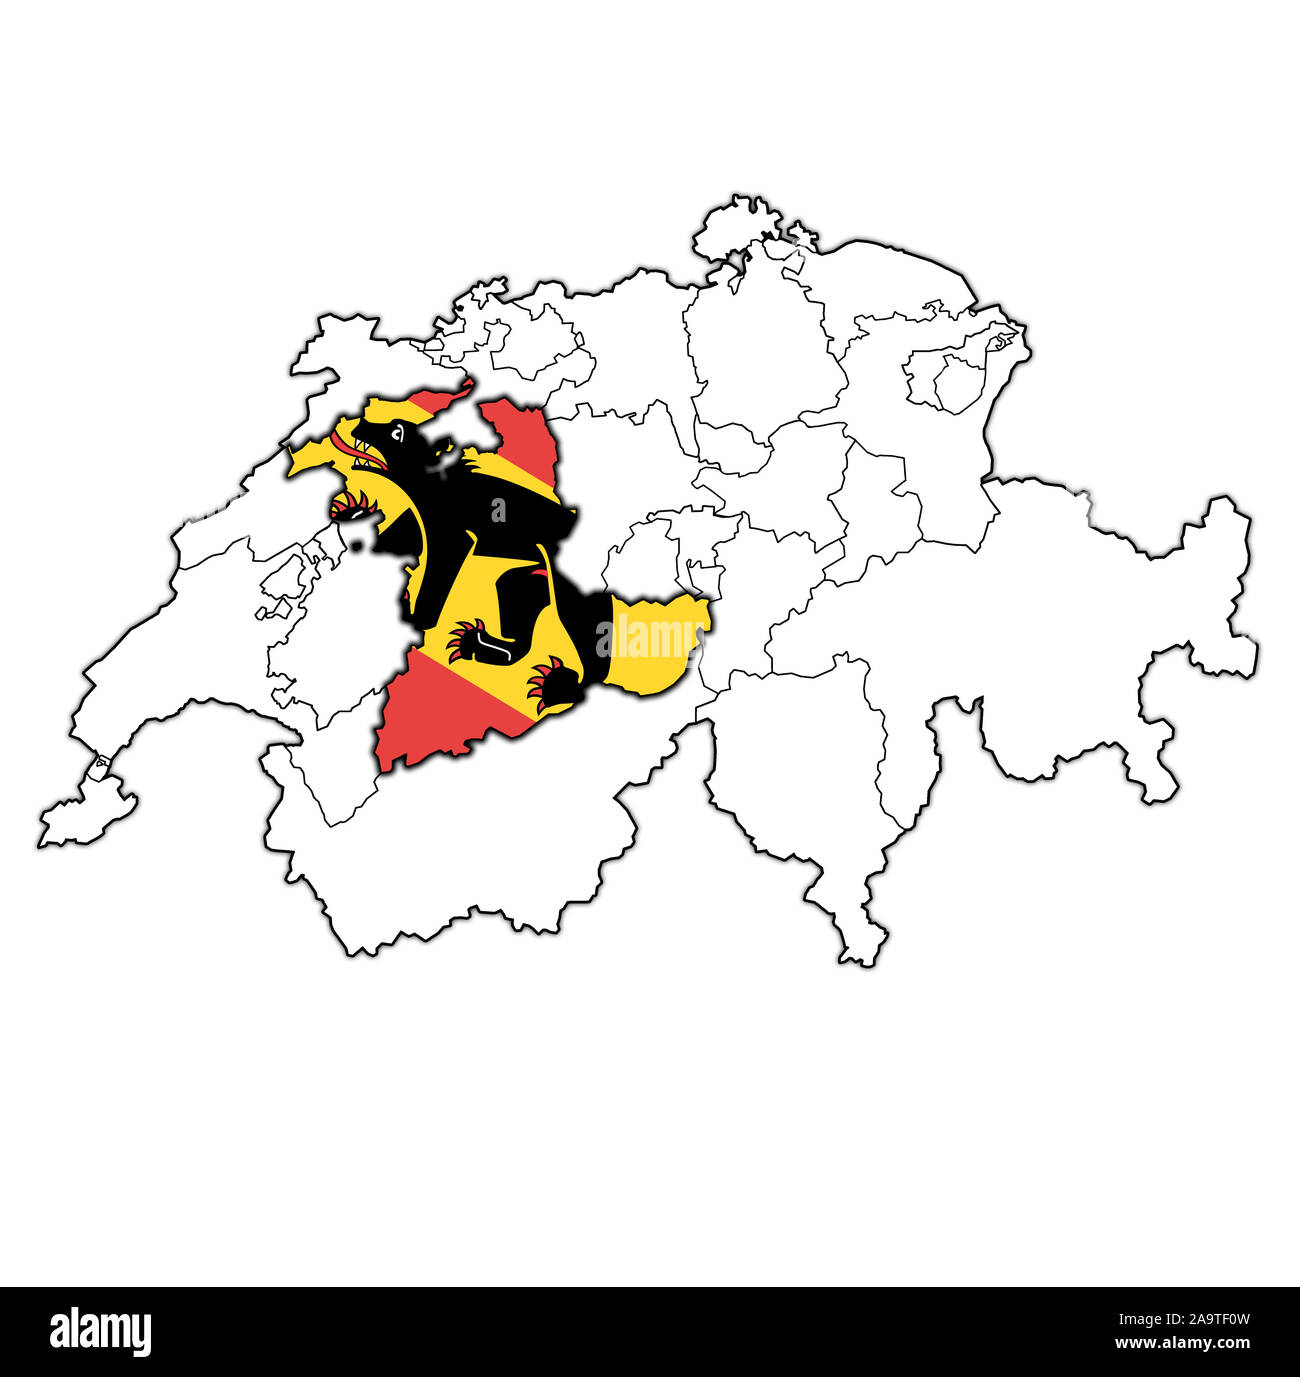 Drapeau et territoire du canton de Berne la carte des divisions administratives de la Suisse Banque D'Images